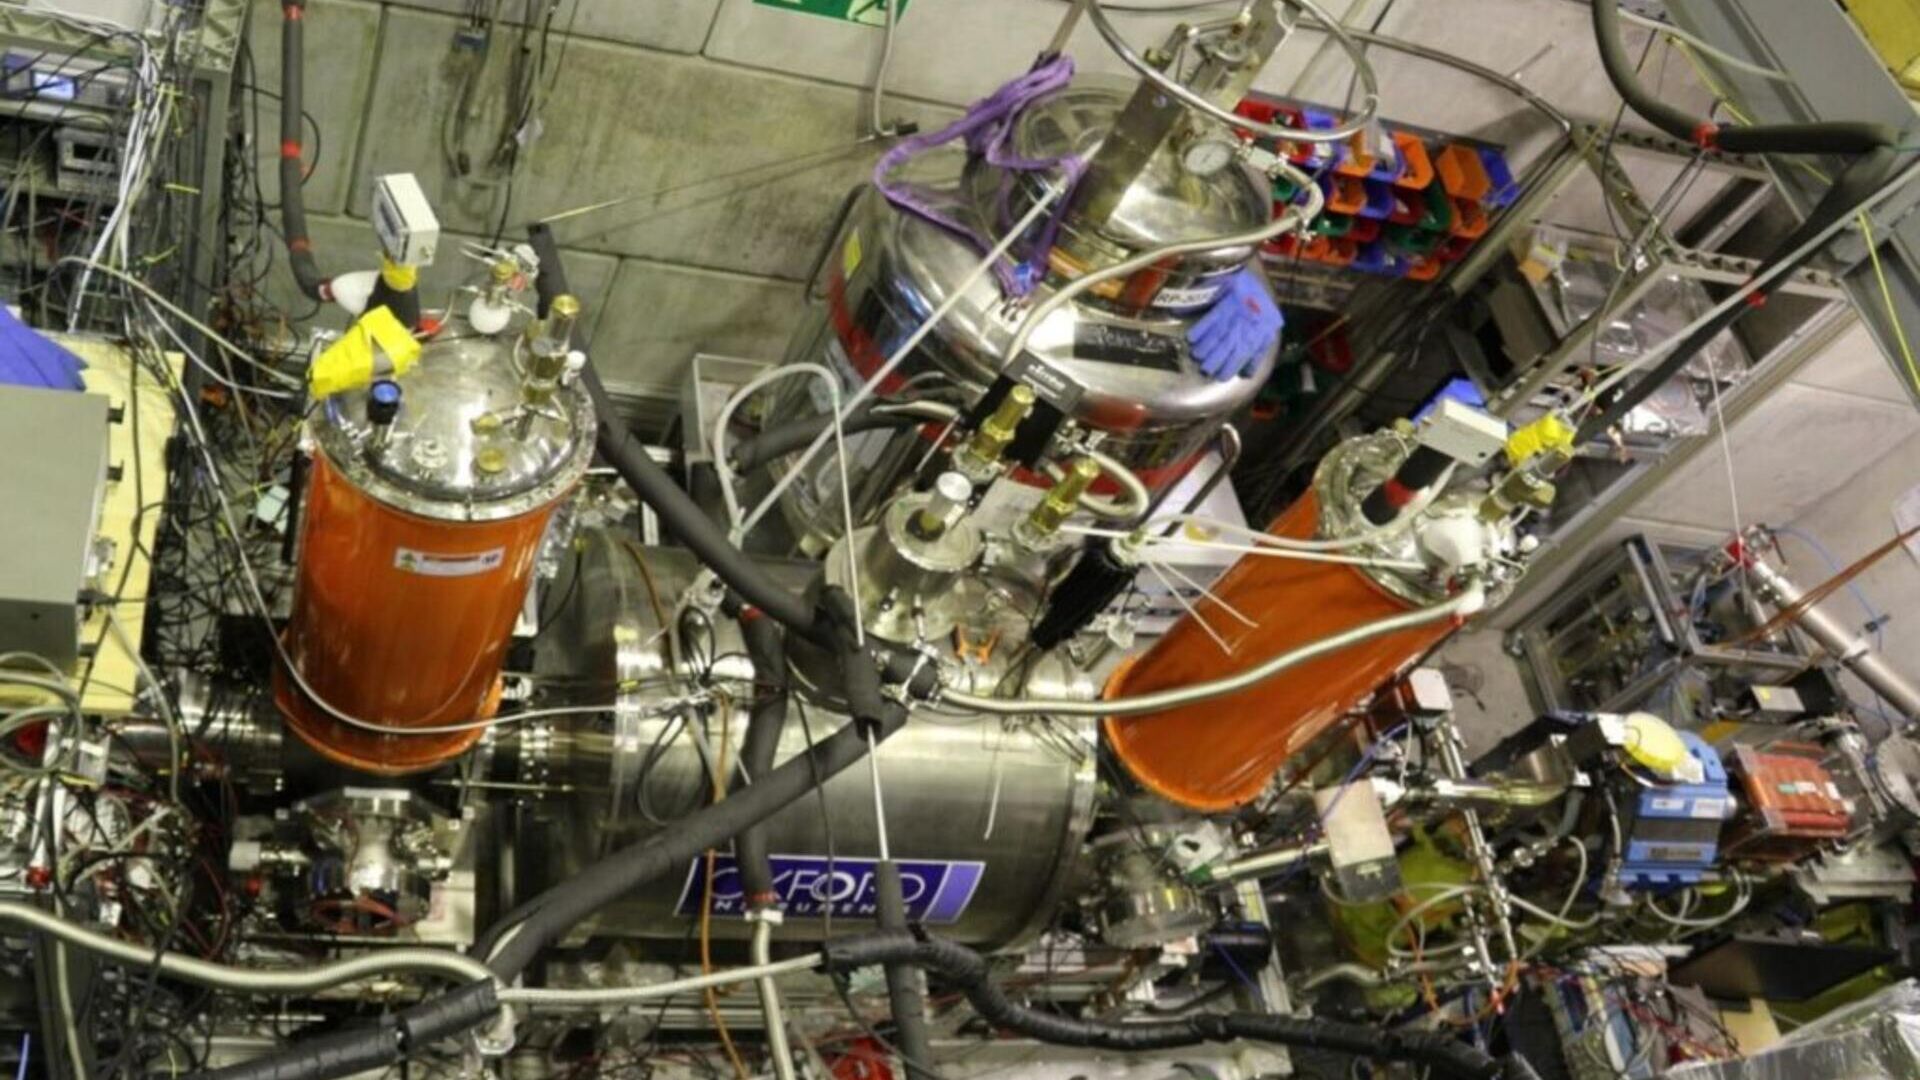 ЦЕРН: в 2024 году семидесятилетие Европейской лаборатории исследований физики элементарных частиц в Женеве будет открыто для всех и будет отмечаться большим количеством мероприятий и во многих странах.